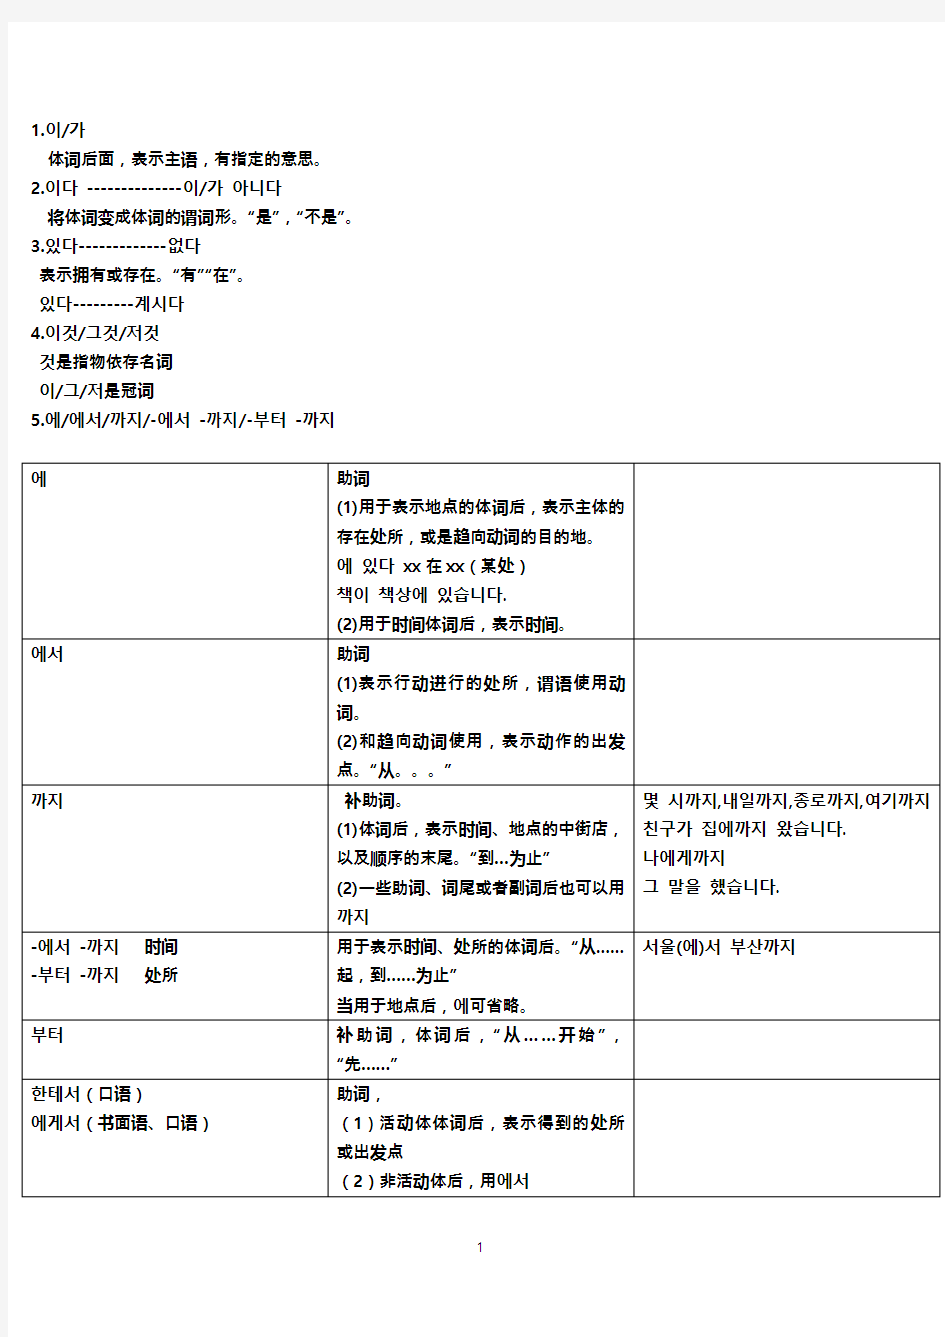 韩国语教程延世大学13册语法总结(2020年10月整理).pdf